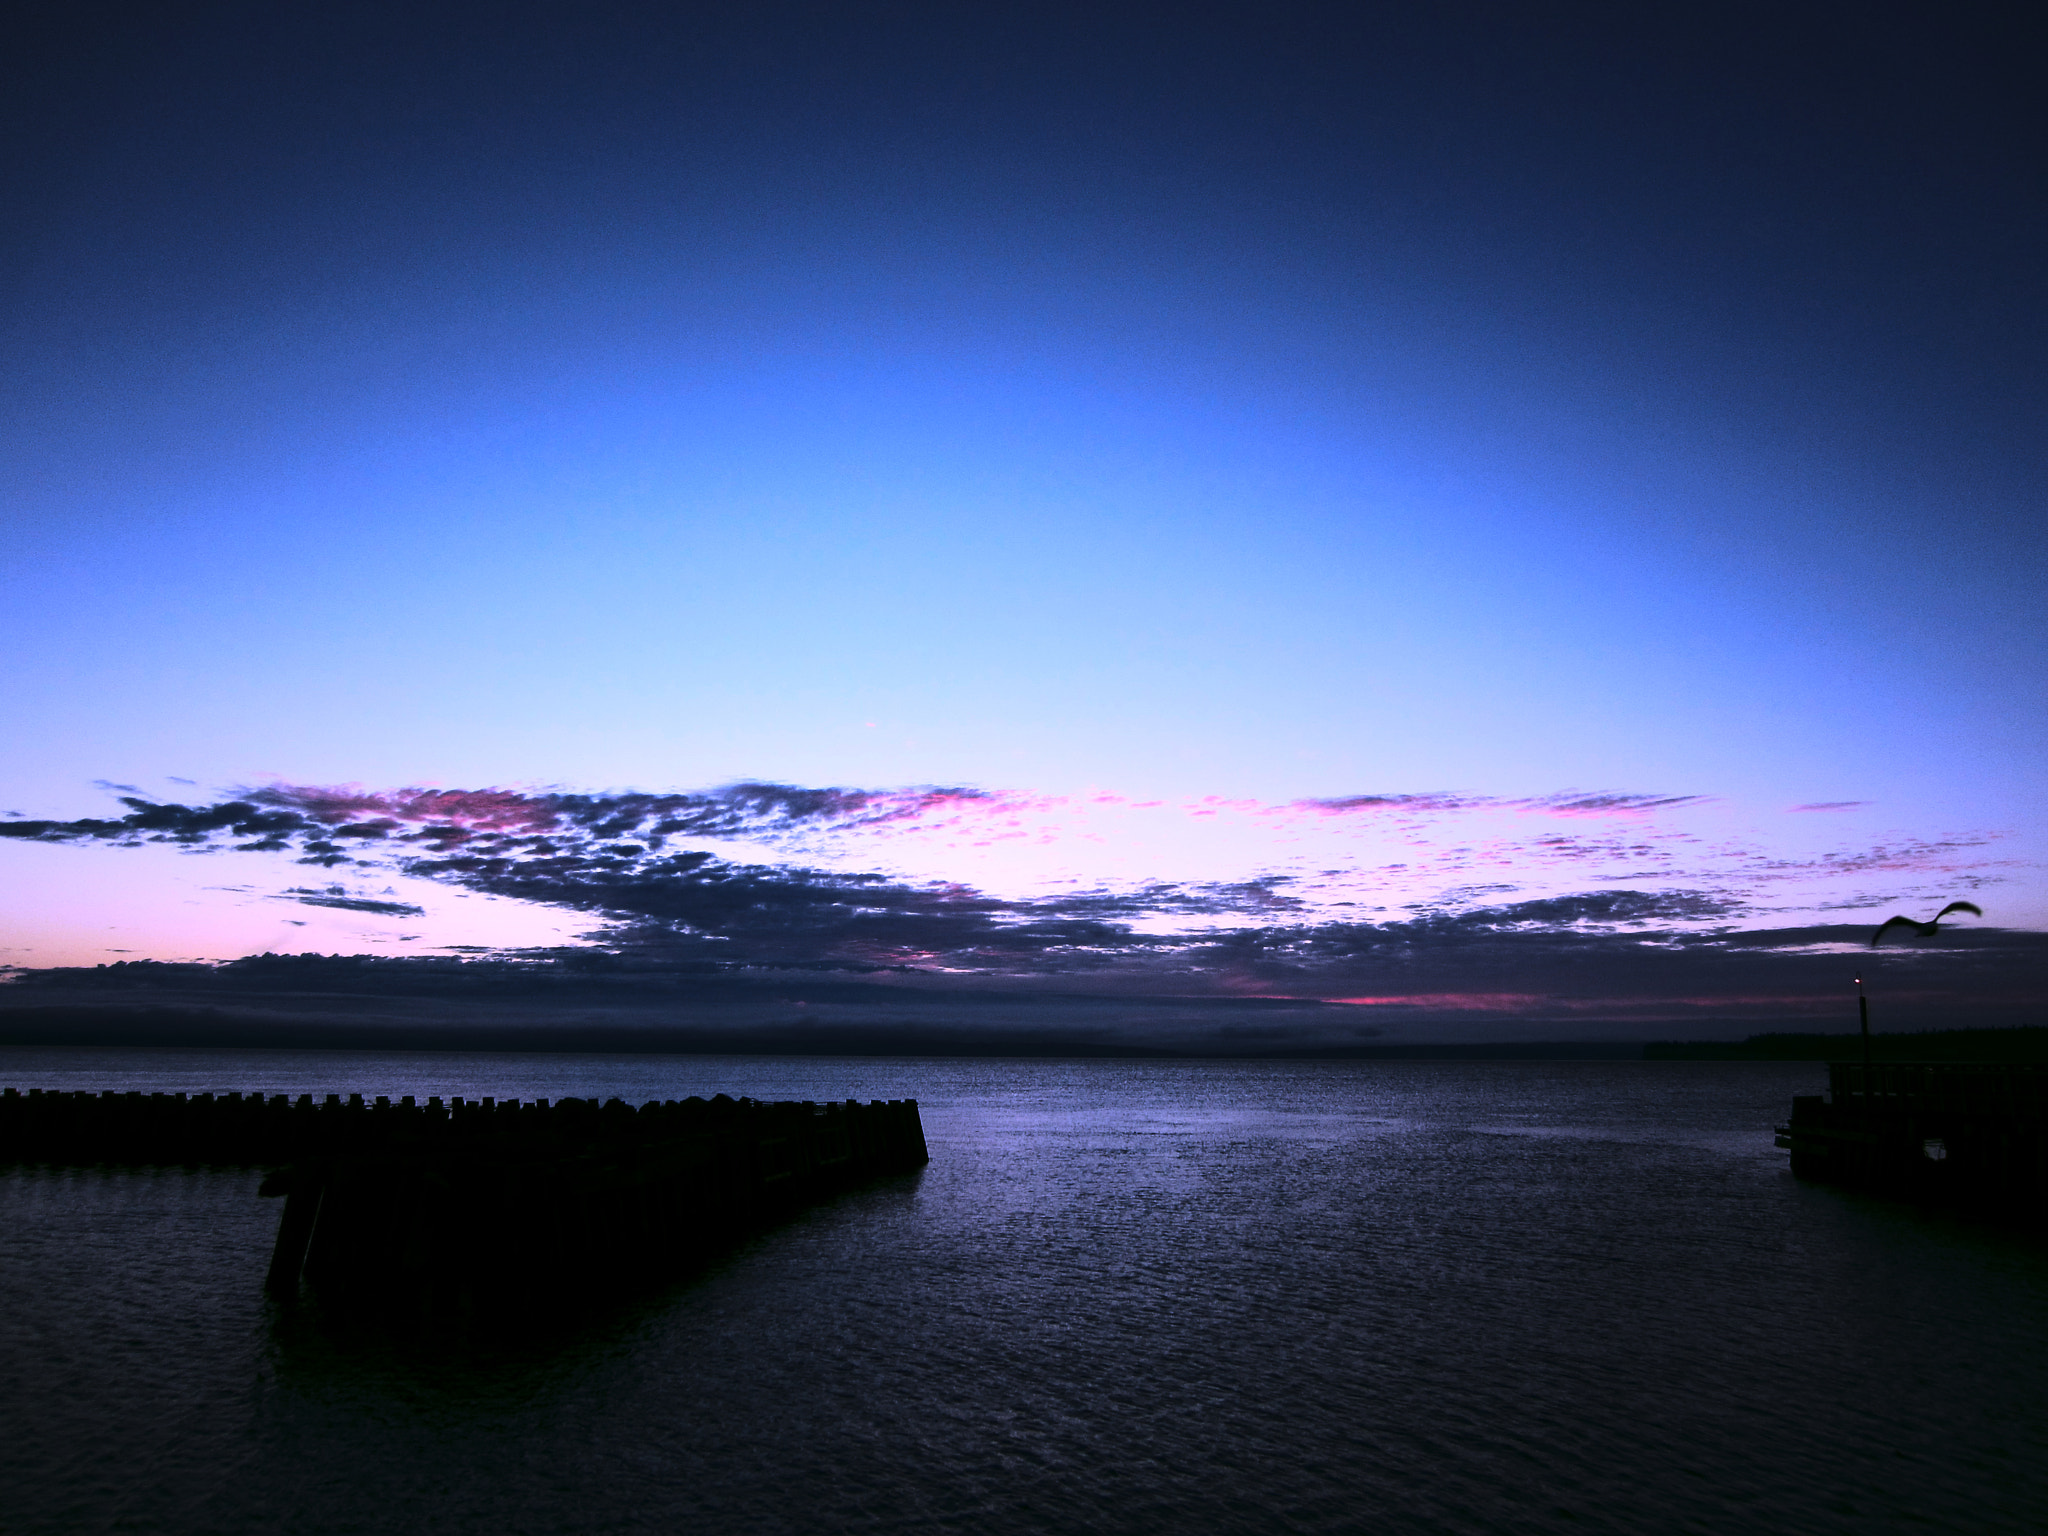 Canon PowerShot ELPH 300 HS (IXUS 220 HS / IXY 410F) sample photo. Salish sunrise photography